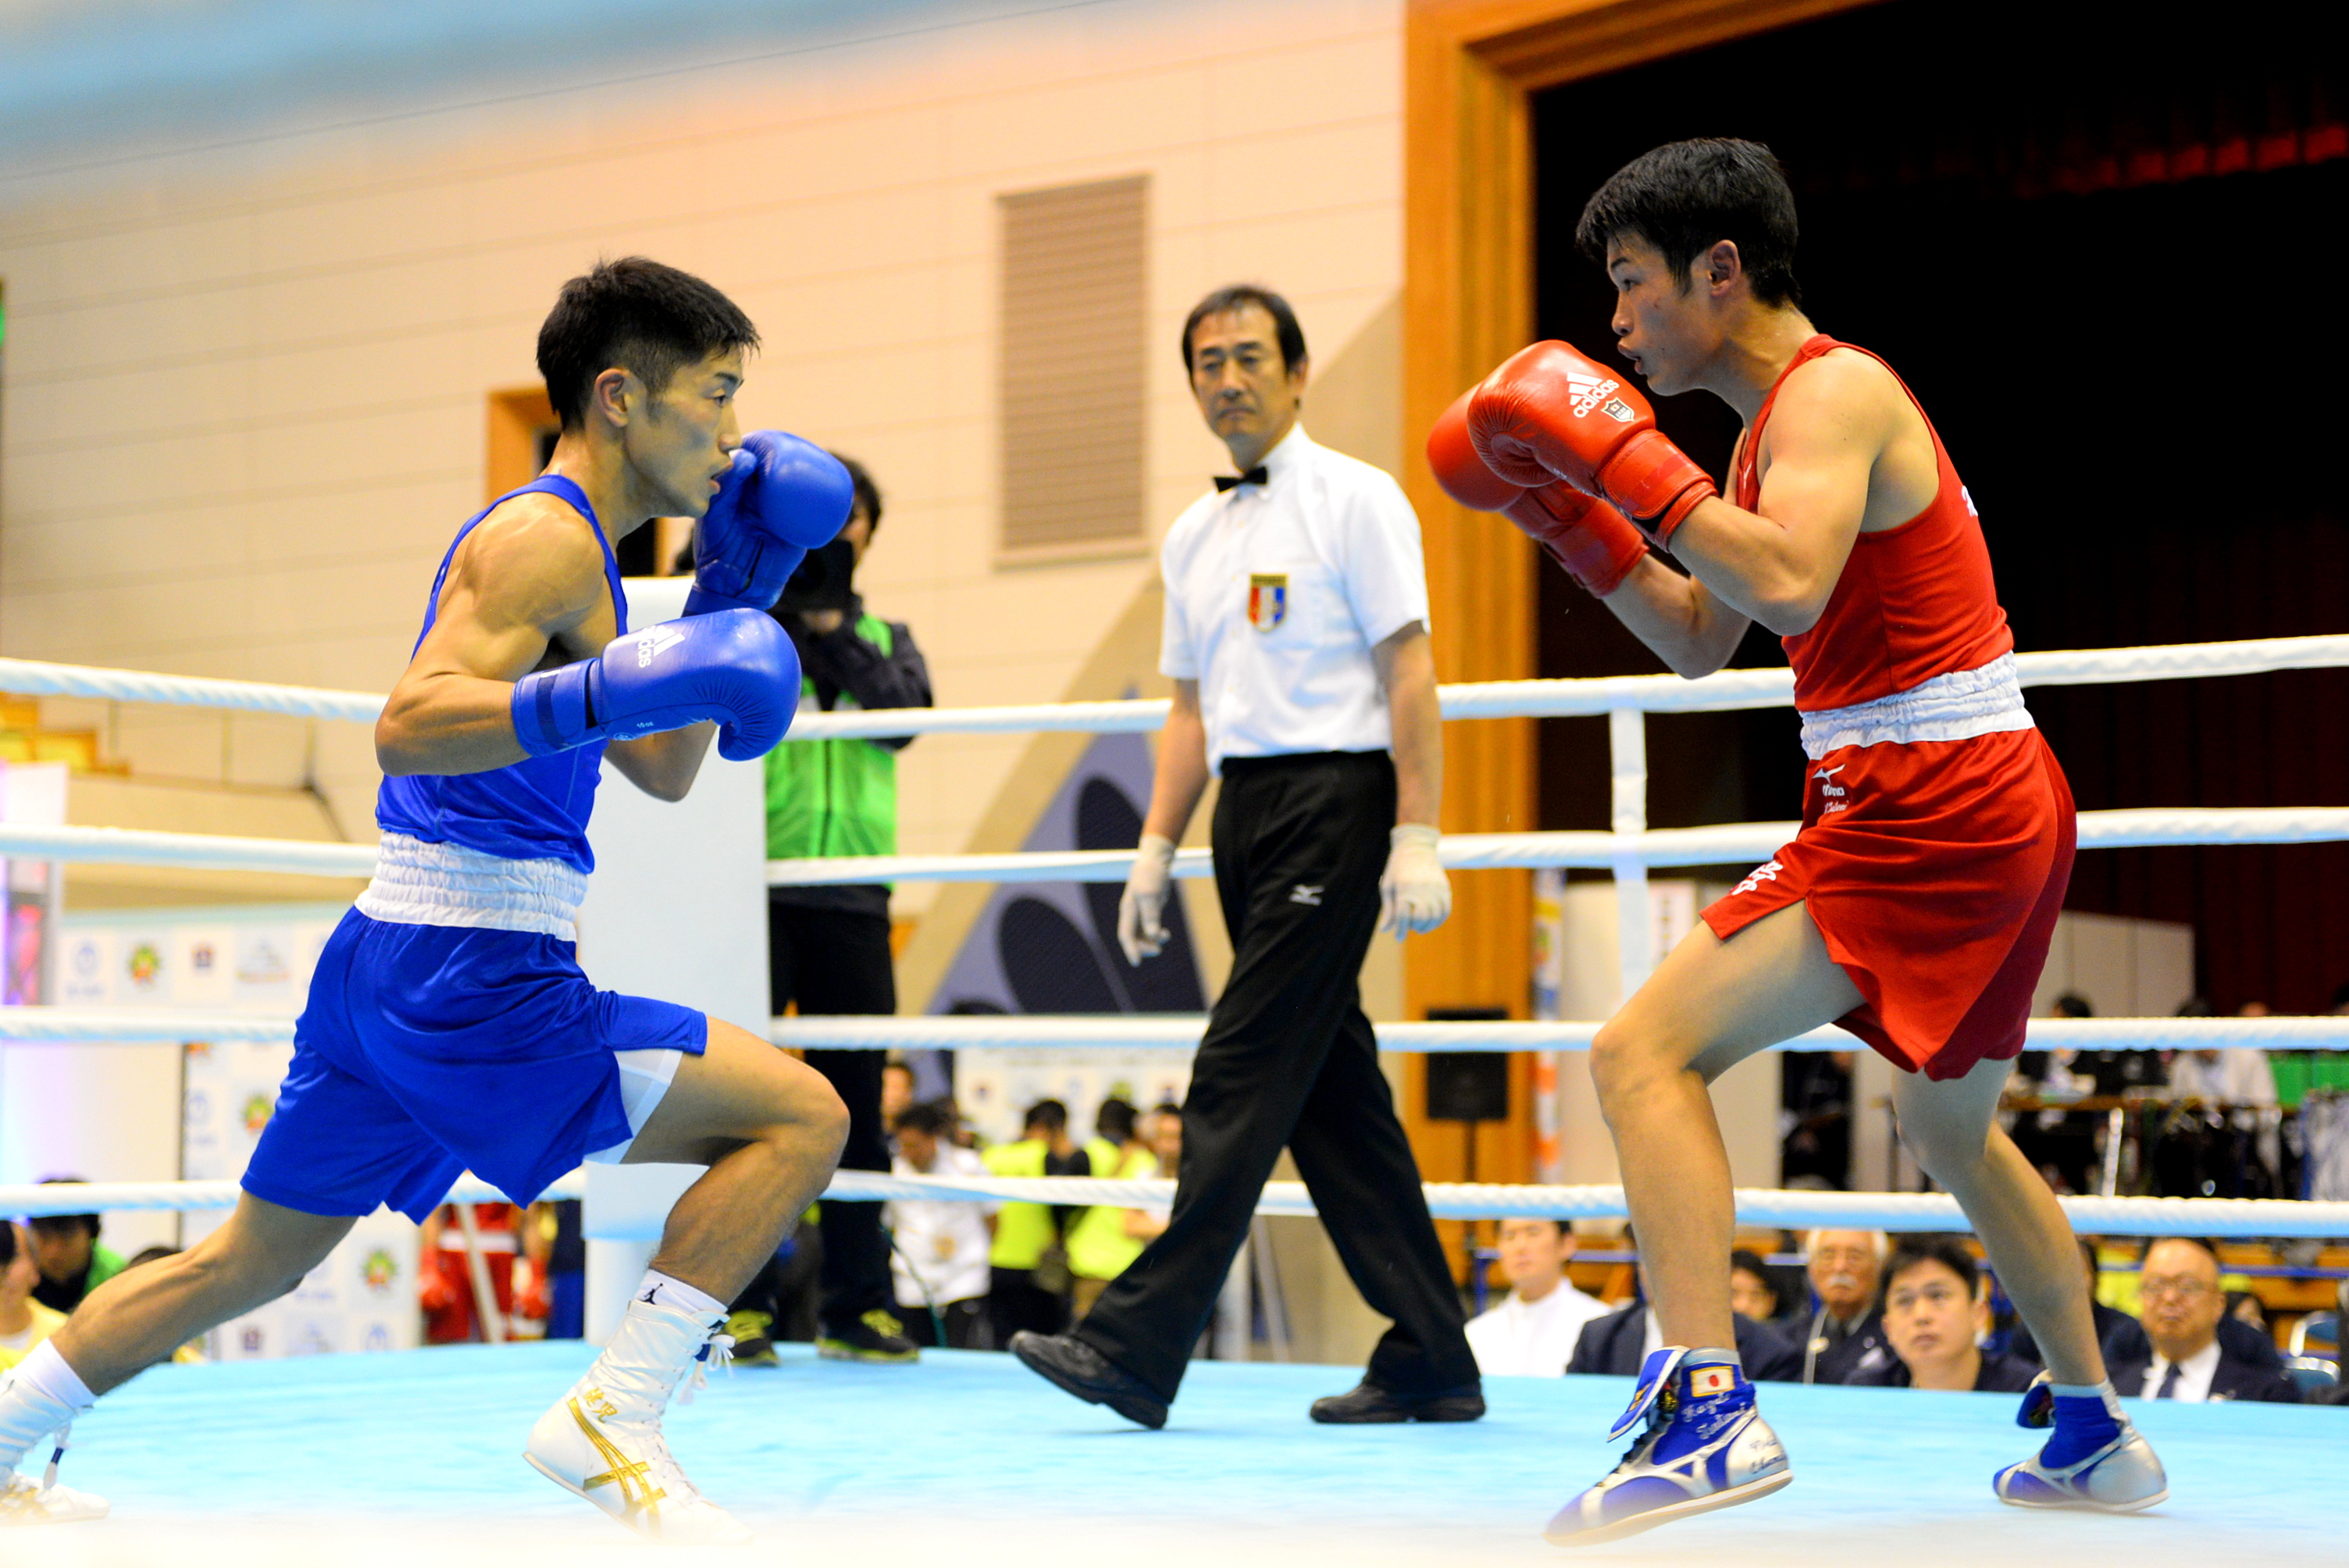 全日本選手権 激闘で決着 バウトレビュー は2試合 日本ボクシング連盟